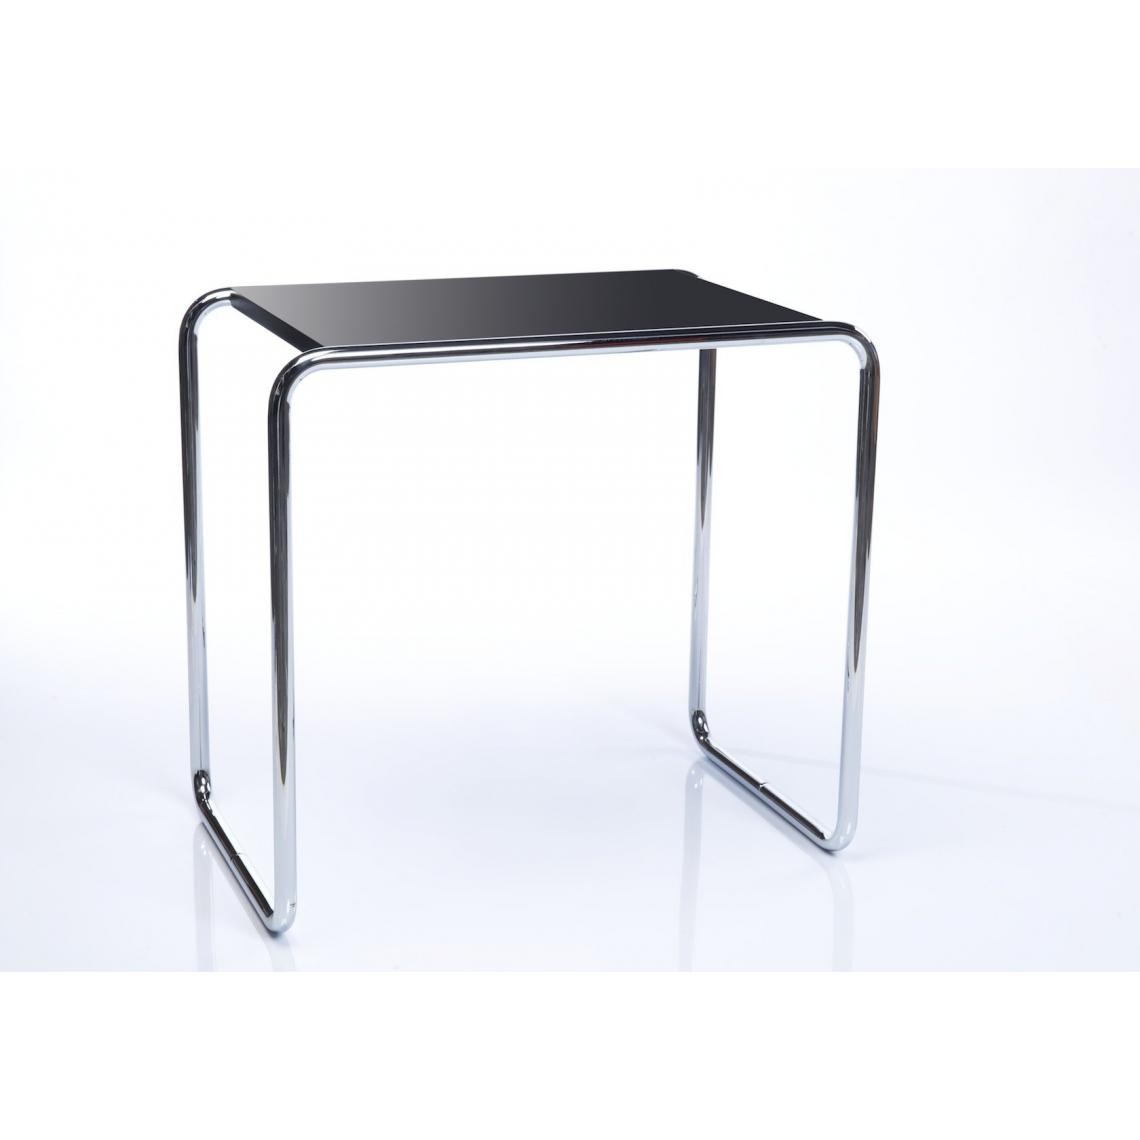 Thonet - Table d'appoint B 9 - c (59 x 55 x 39 cm) - Décapé noir - Tables d'appoint